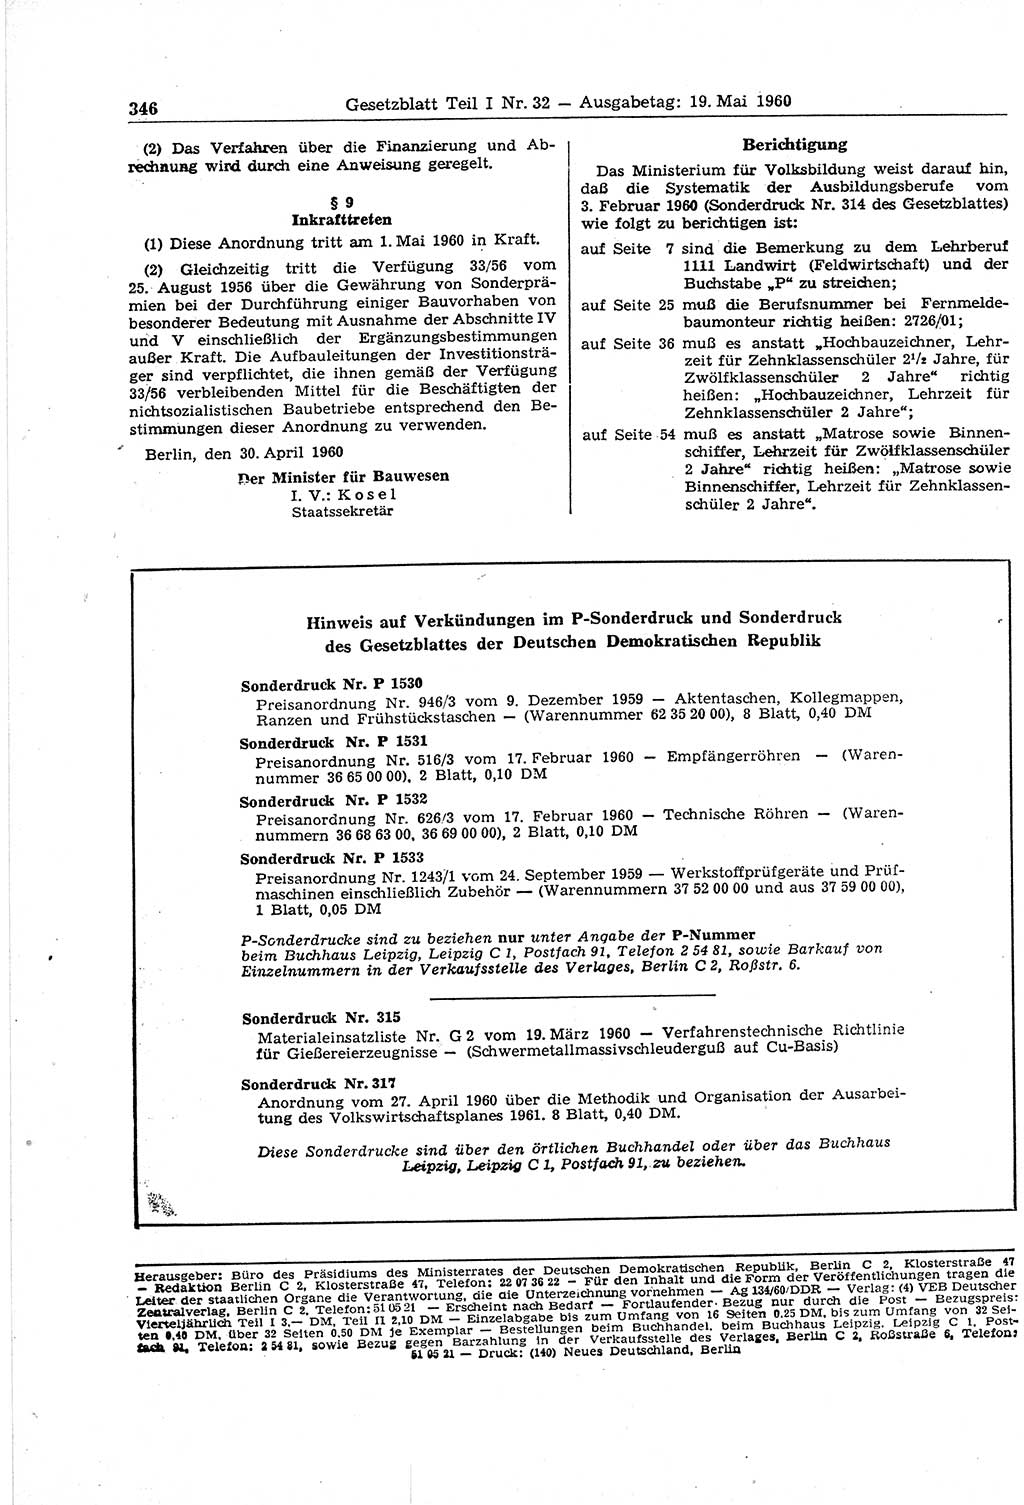 Gesetzblatt (GBl.) der Deutschen Demokratischen Republik (DDR) Teil Ⅰ 1960, Seite 346 (GBl. DDR Ⅰ 1960, S. 346)